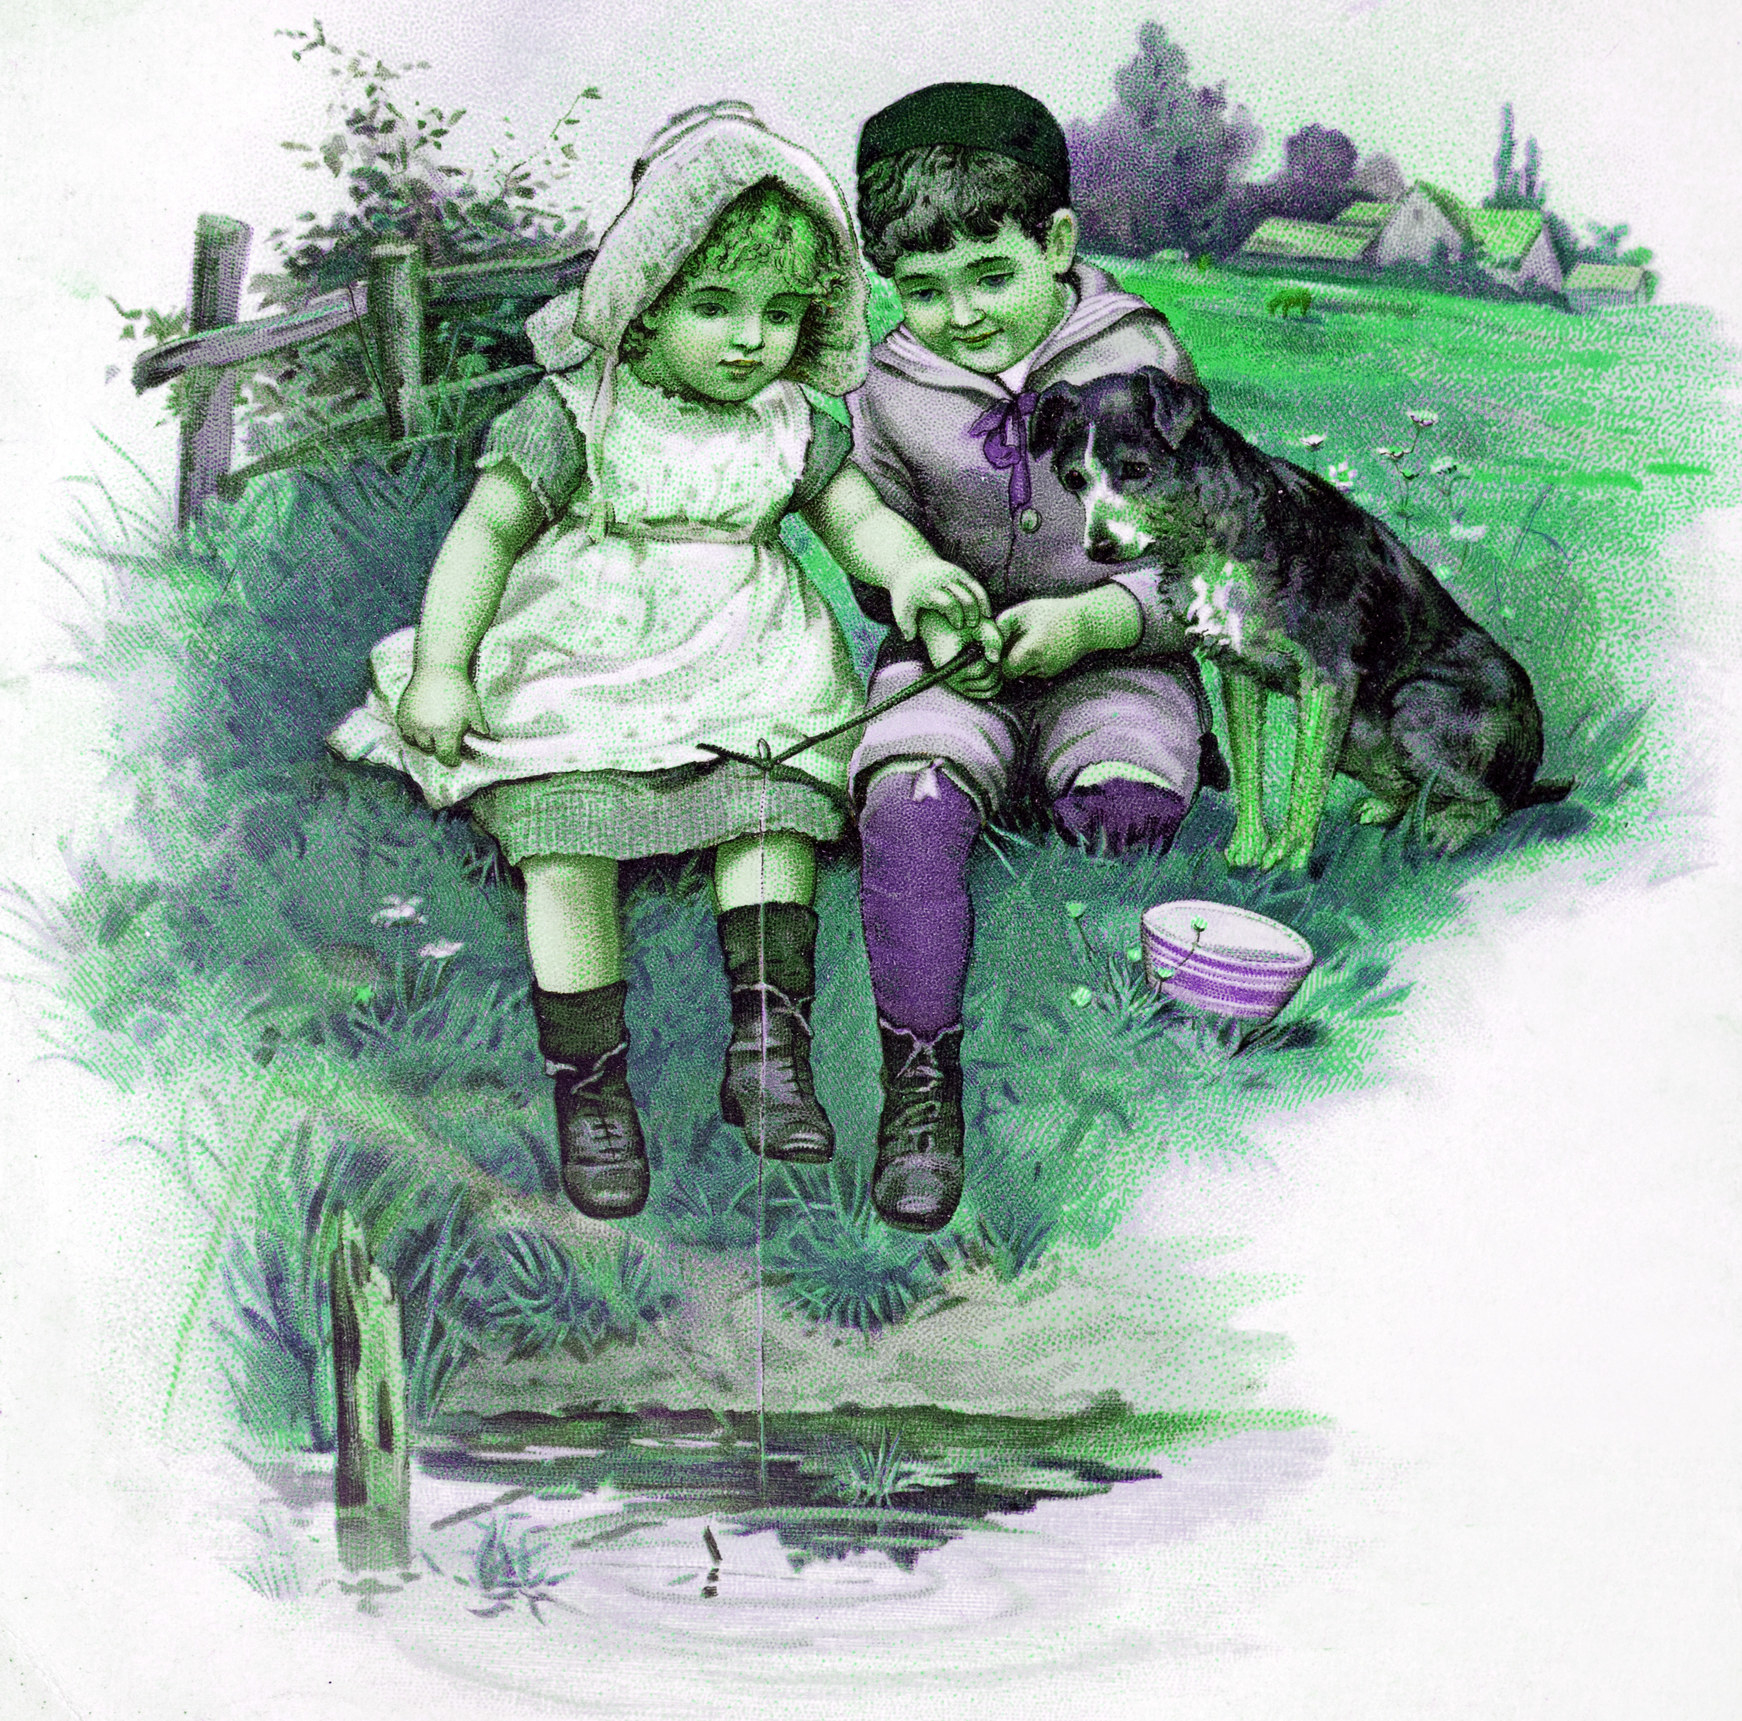 Illustration of two green children